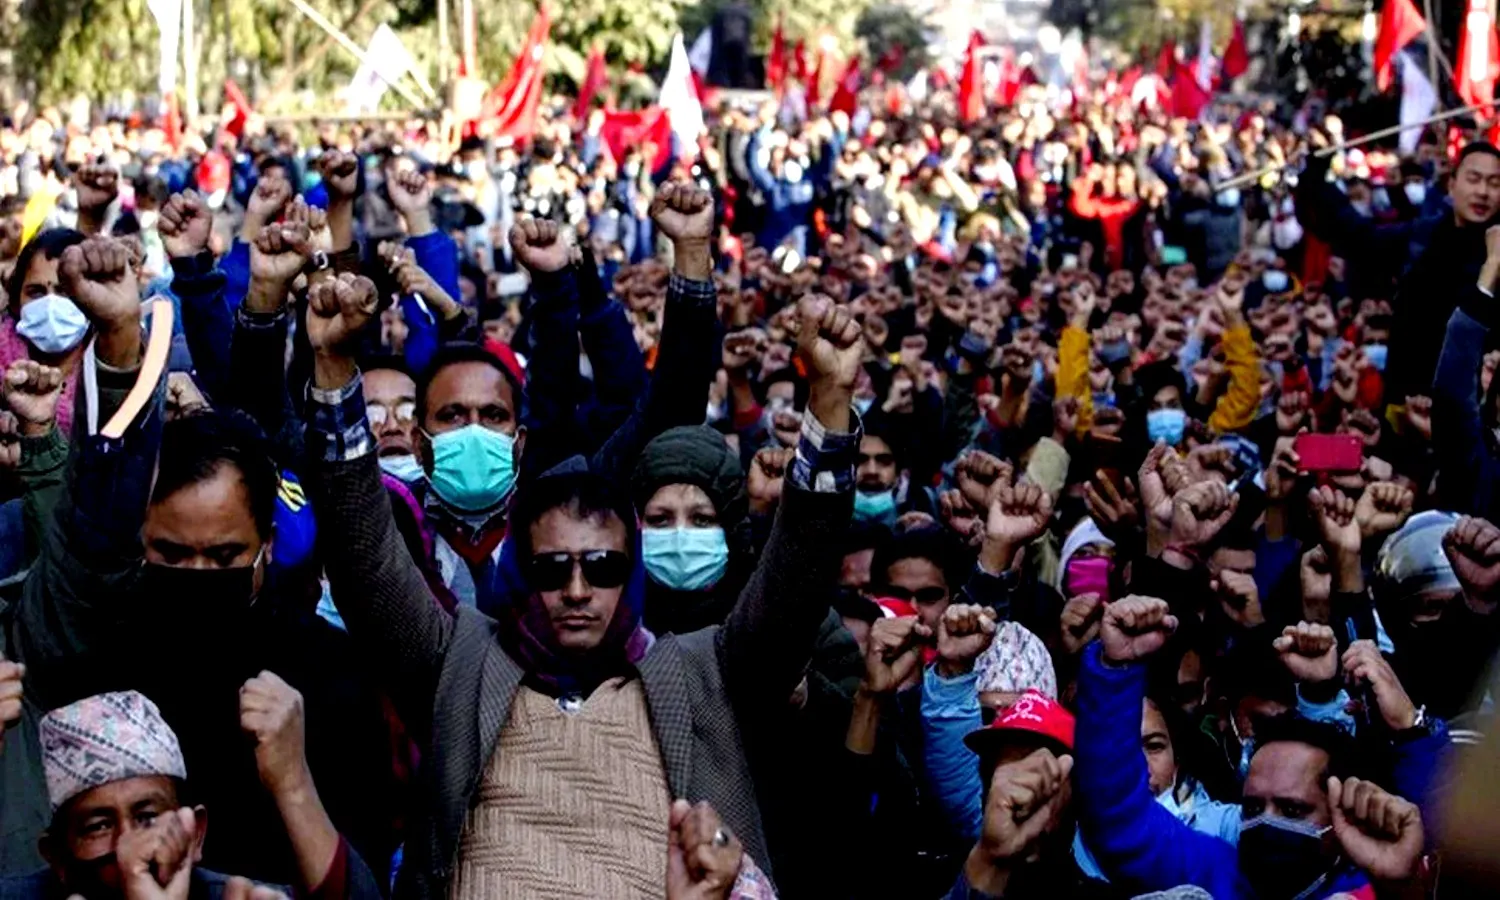 नेपाल में विरोध प्रदर्शन: चीन के खिलाफ सड़कों पर आए सैकड़ों लोग, चीनी राजदूत यांकी वापस जाओ के लगाए नारे